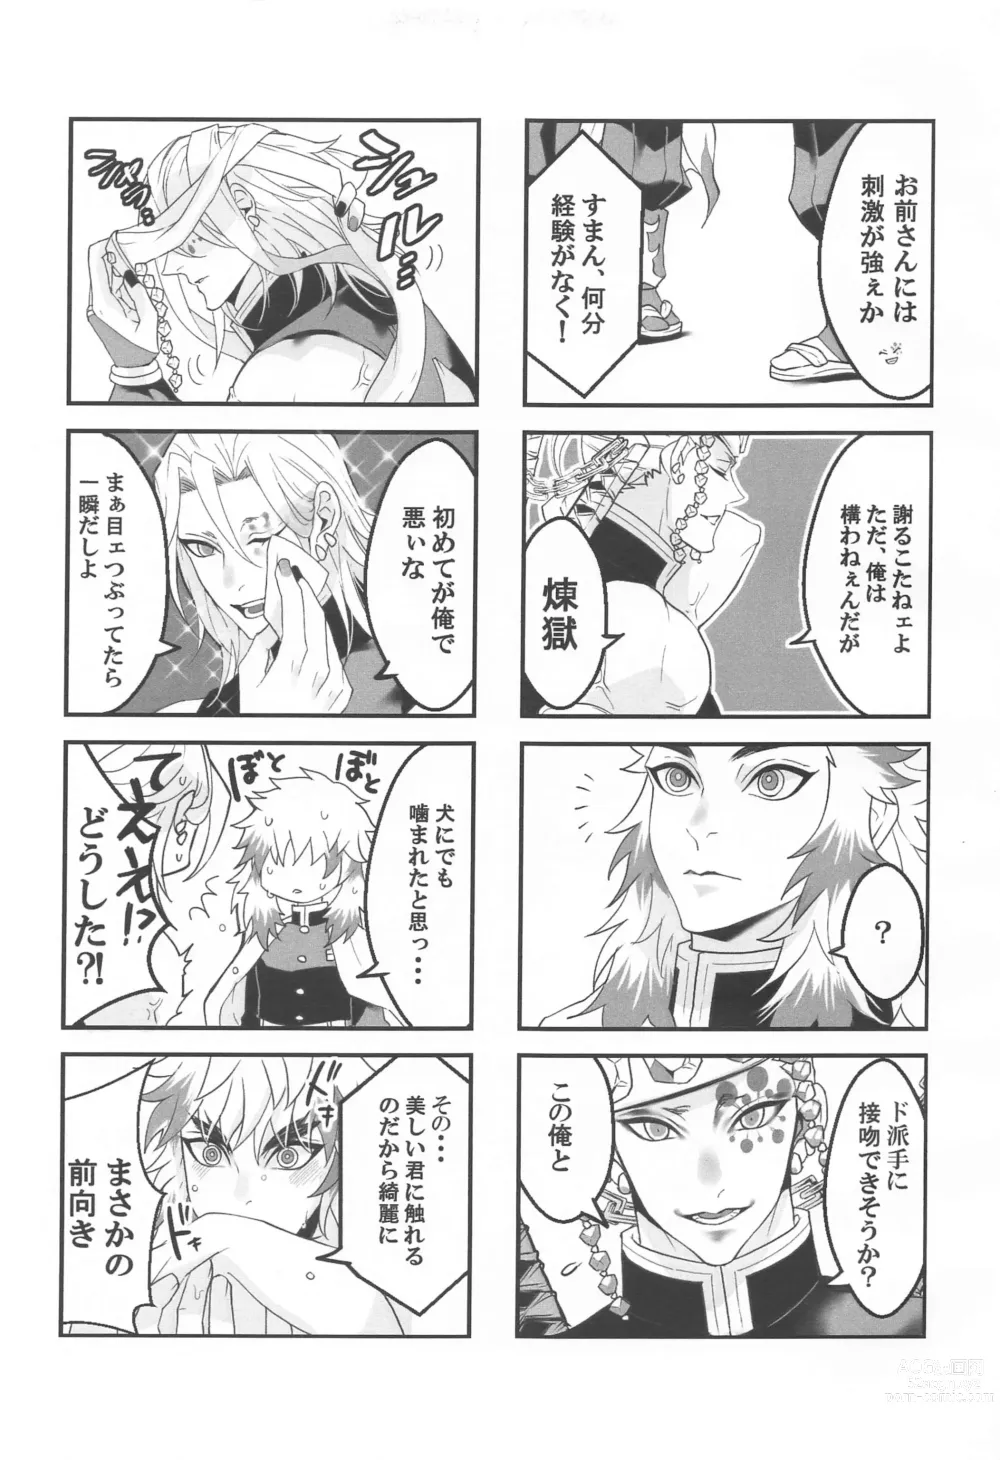 Page 4 of doujinshi ●● Shinai to Derarenai Heya